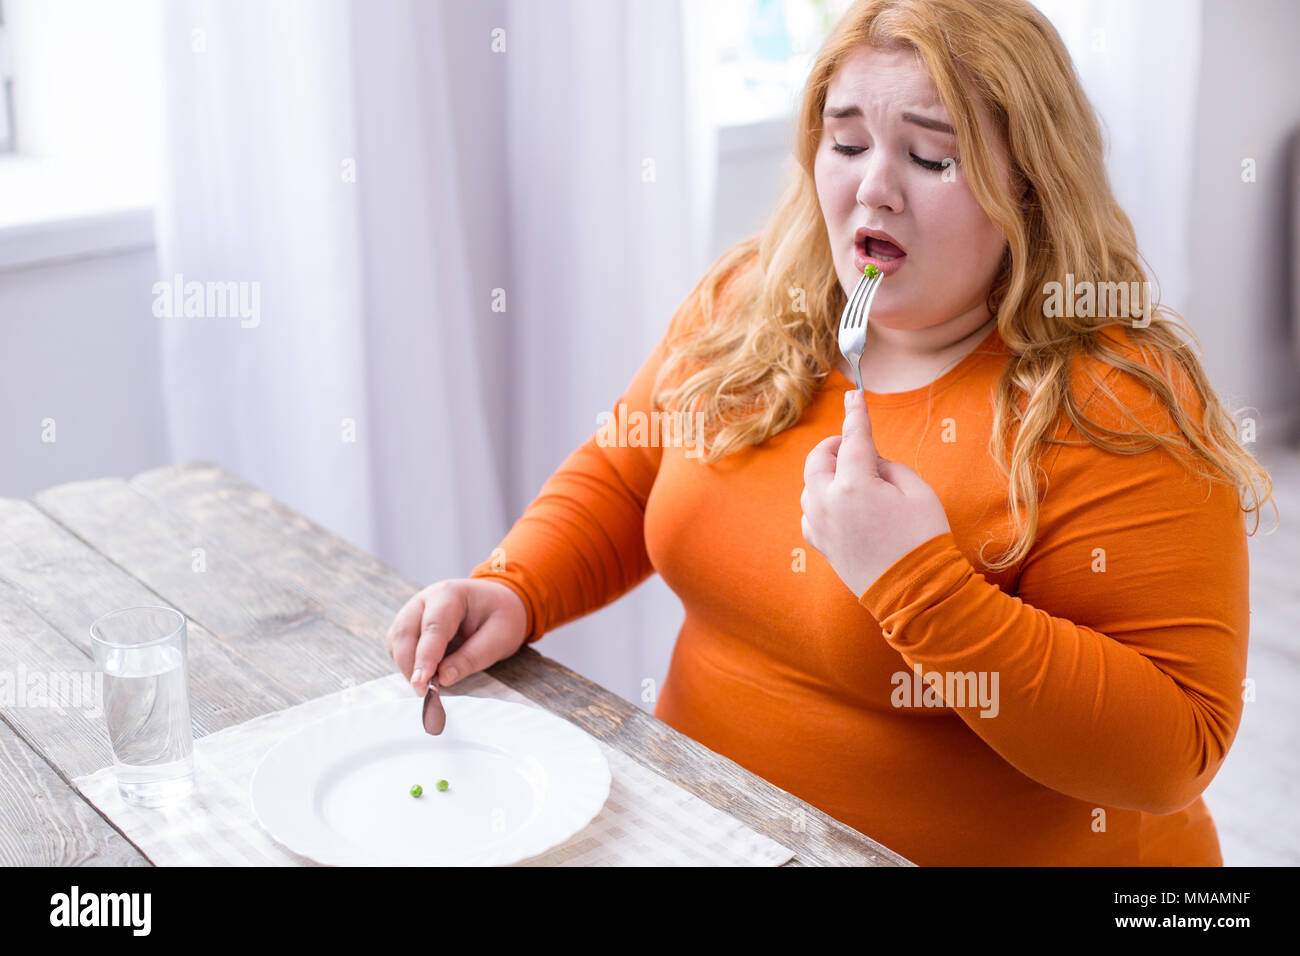 Desolate stout woman eating peas Stock Photo